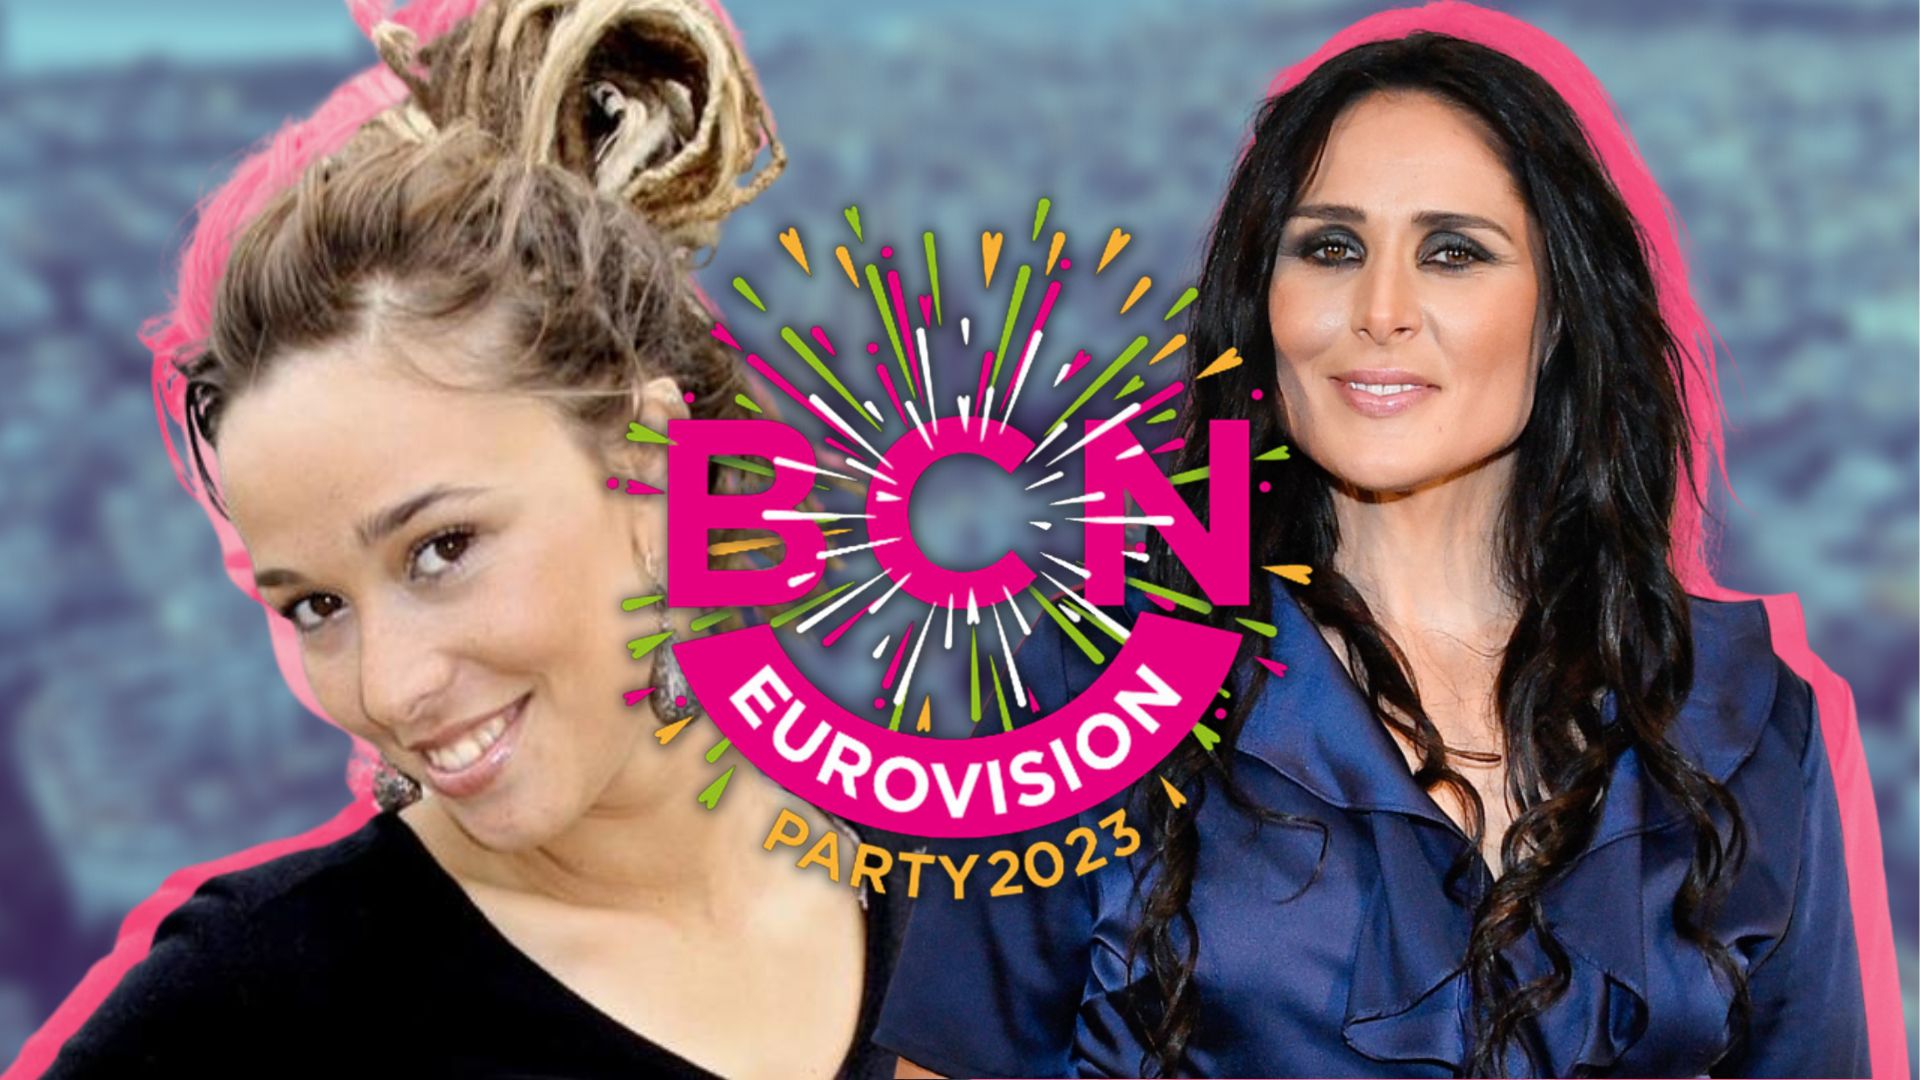 Barcelona Eurovision Party 2023: dates, on veure, entrades i totes les sorpreses de l'esdeveniment